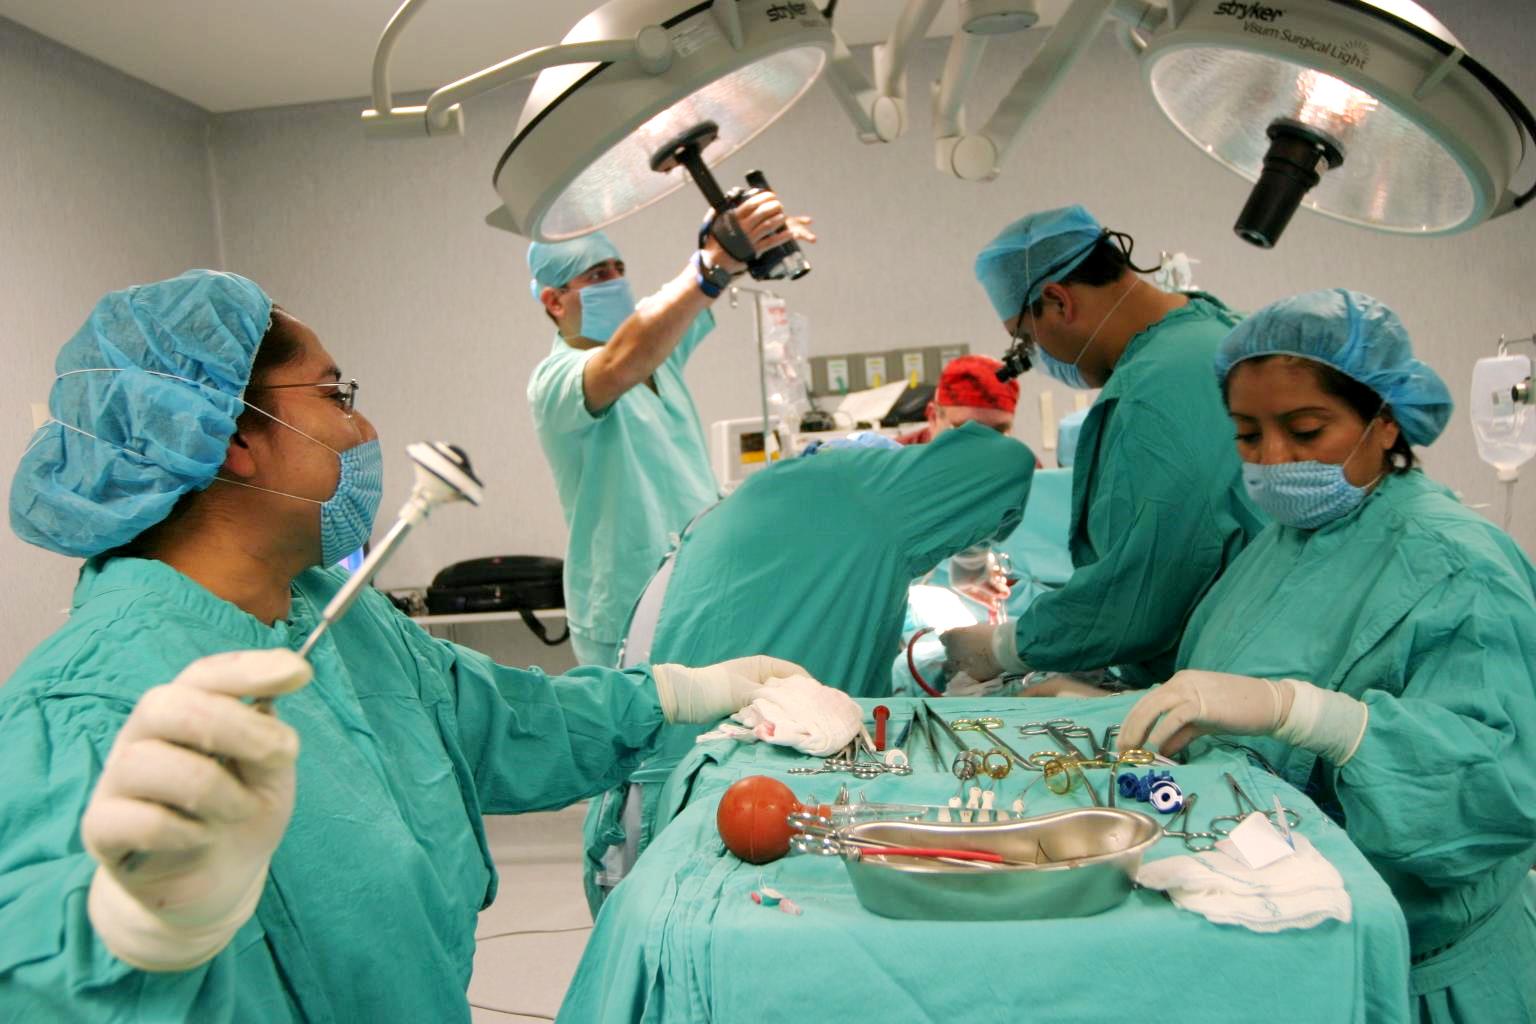 Cirujanos trabajando en un quirofano en una procuración de organos